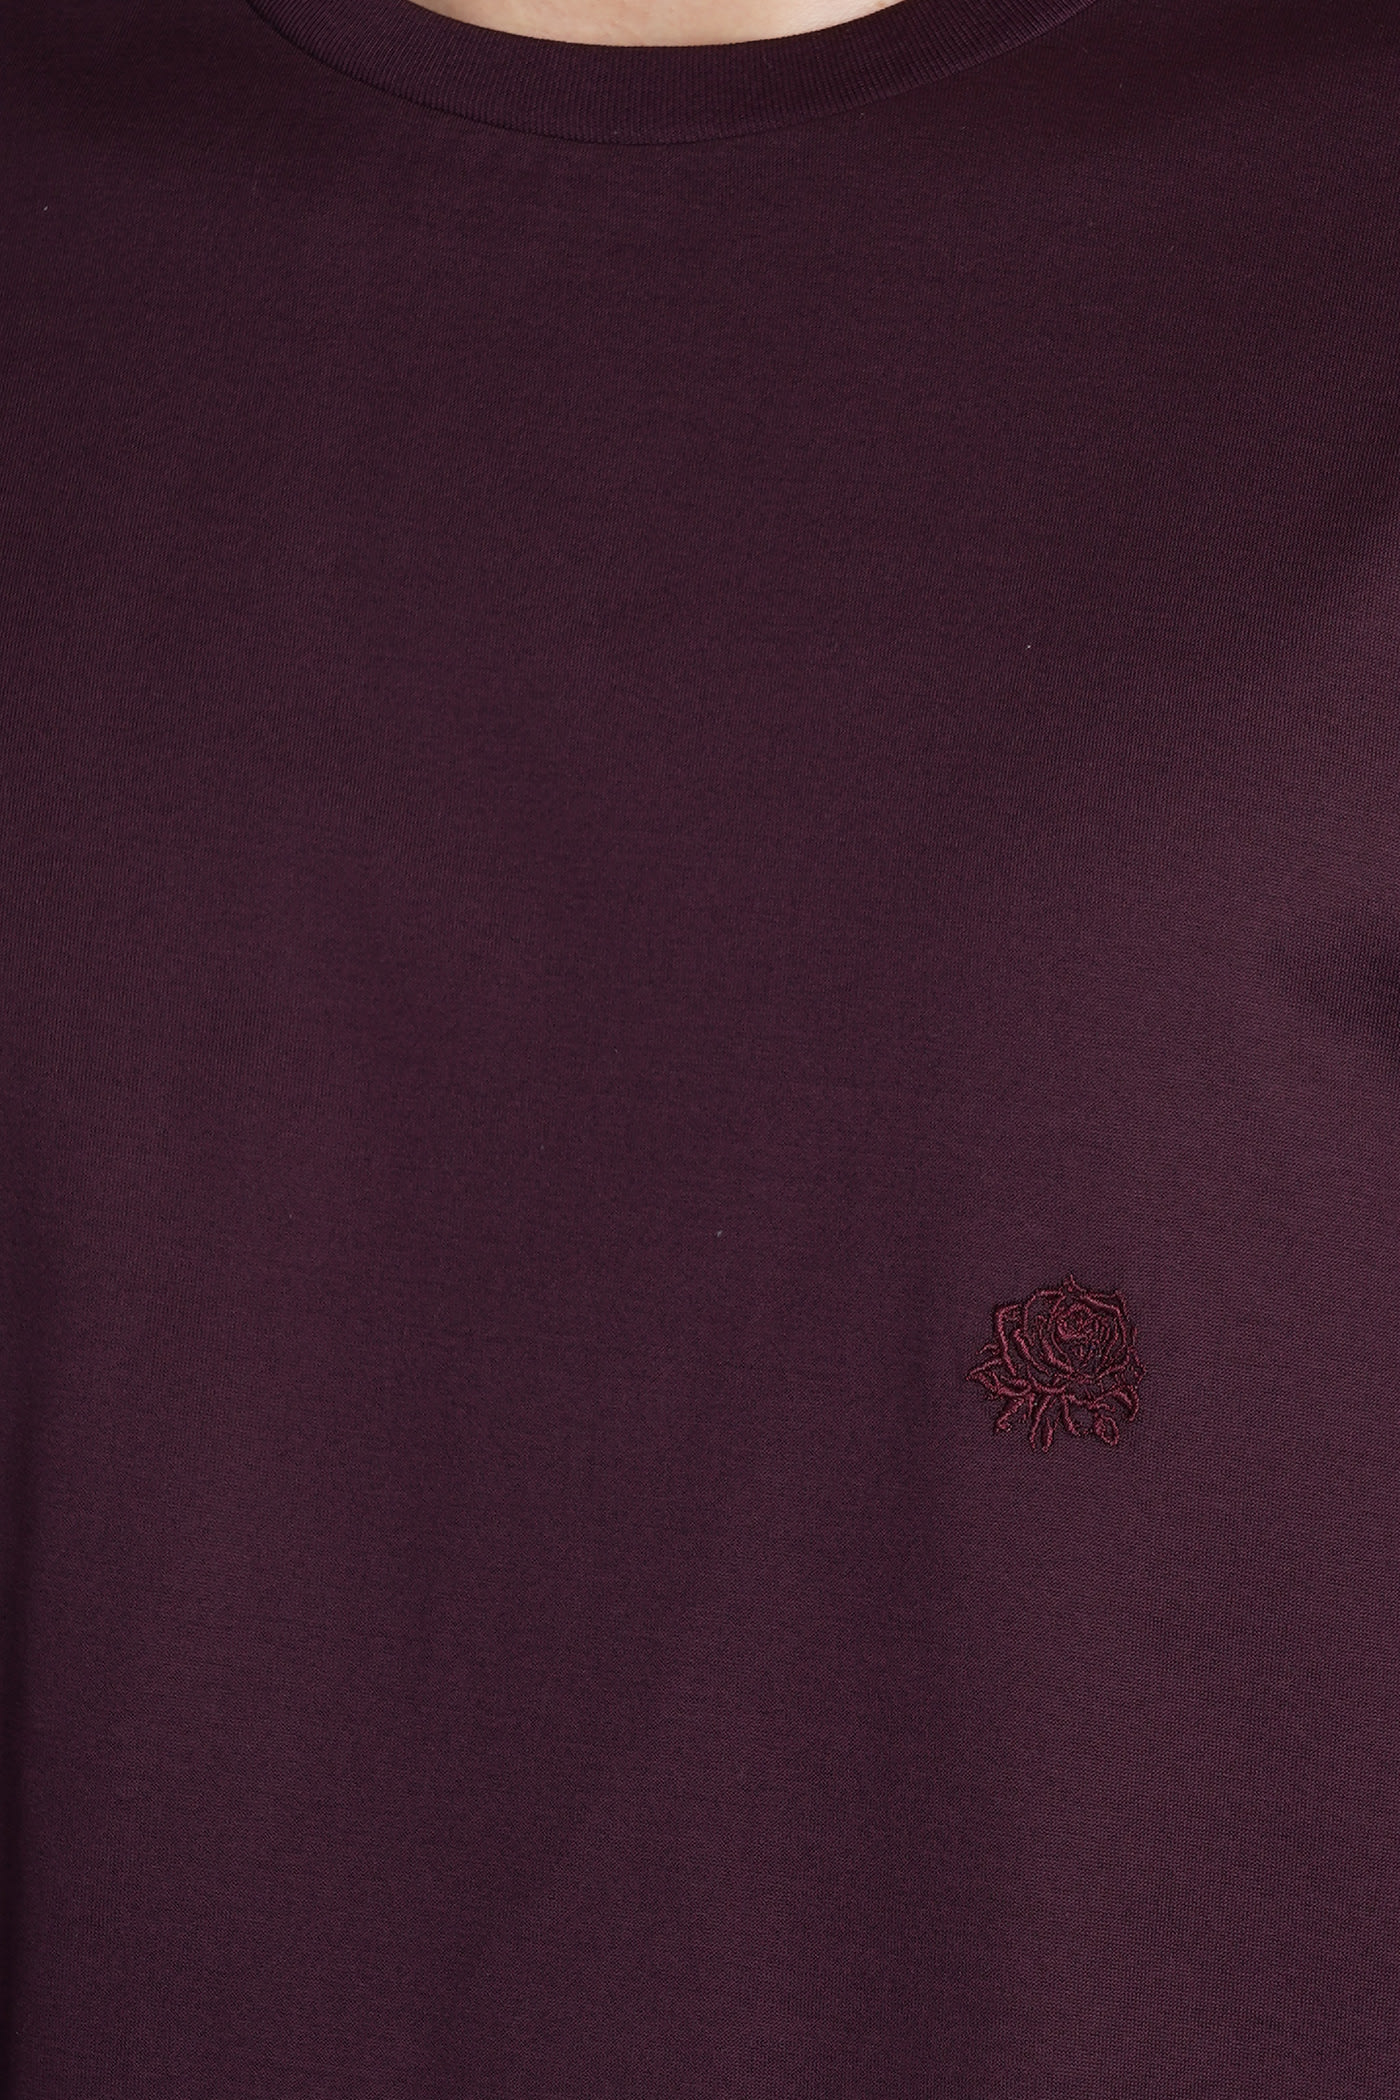 Shop Low Brand B150 Rose T-shirt In Bordeaux Cotton